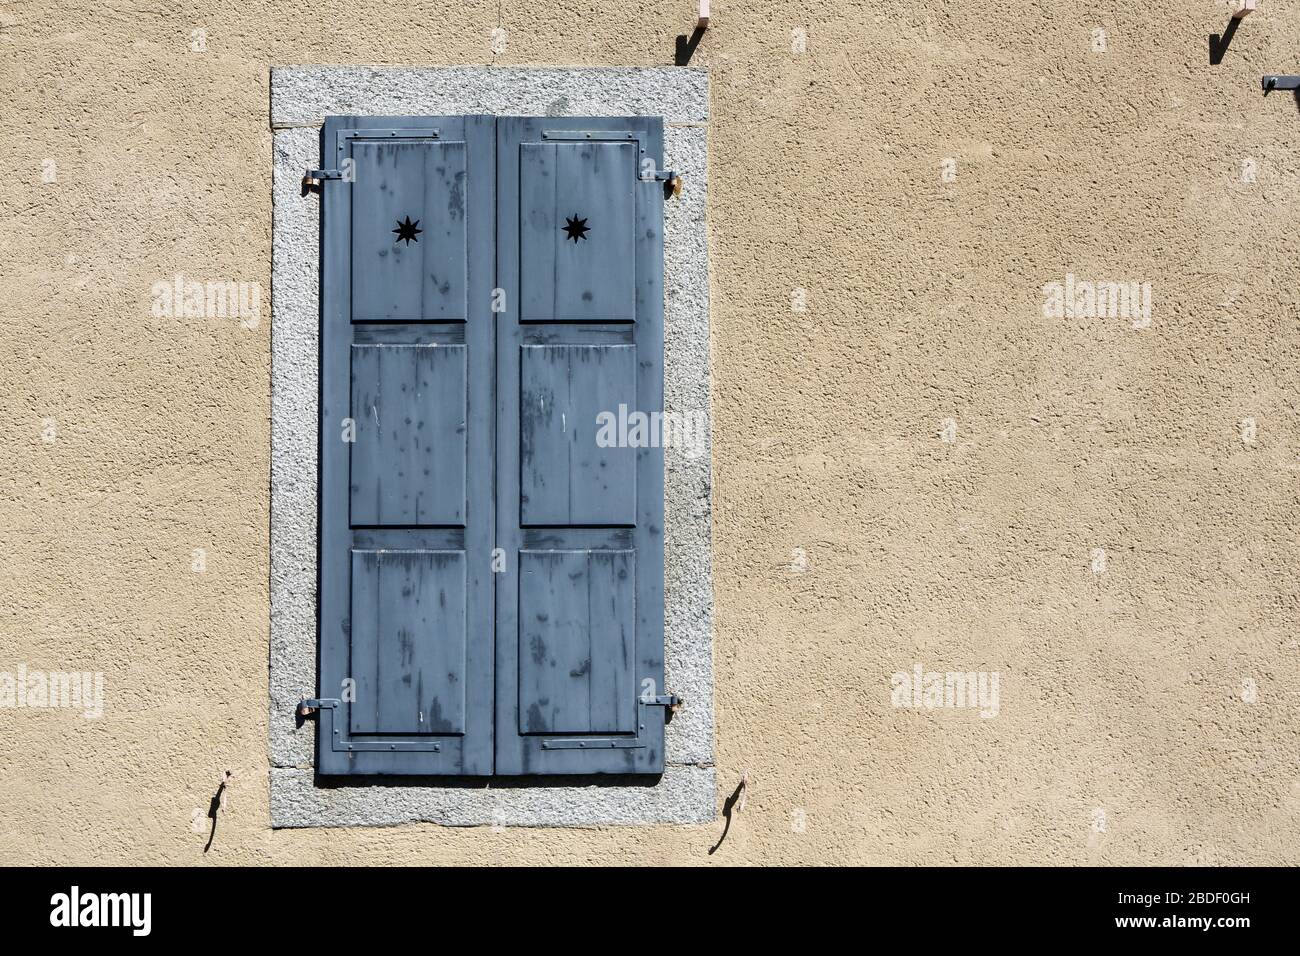 Fenêtre et volet en bois fermés. Presbittère. Saint-Gervais-les-Bains. Alta Saboya. Francia. Foto de stock